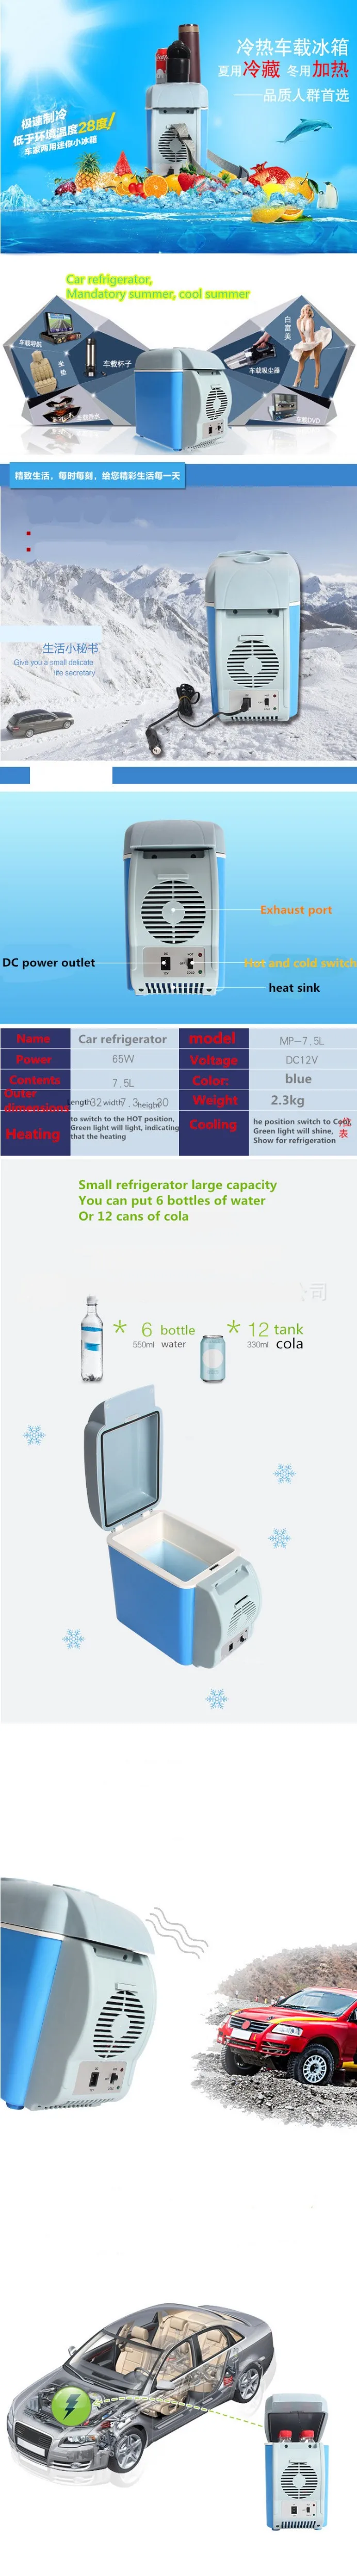 Автомобильный мини-холодильник 12 В, 7,5 литров, семейный автомобиль с коробками для холодной воды, мини-холодильник, небольшой холодильник для машины, теплые холодные коробки, могут быть